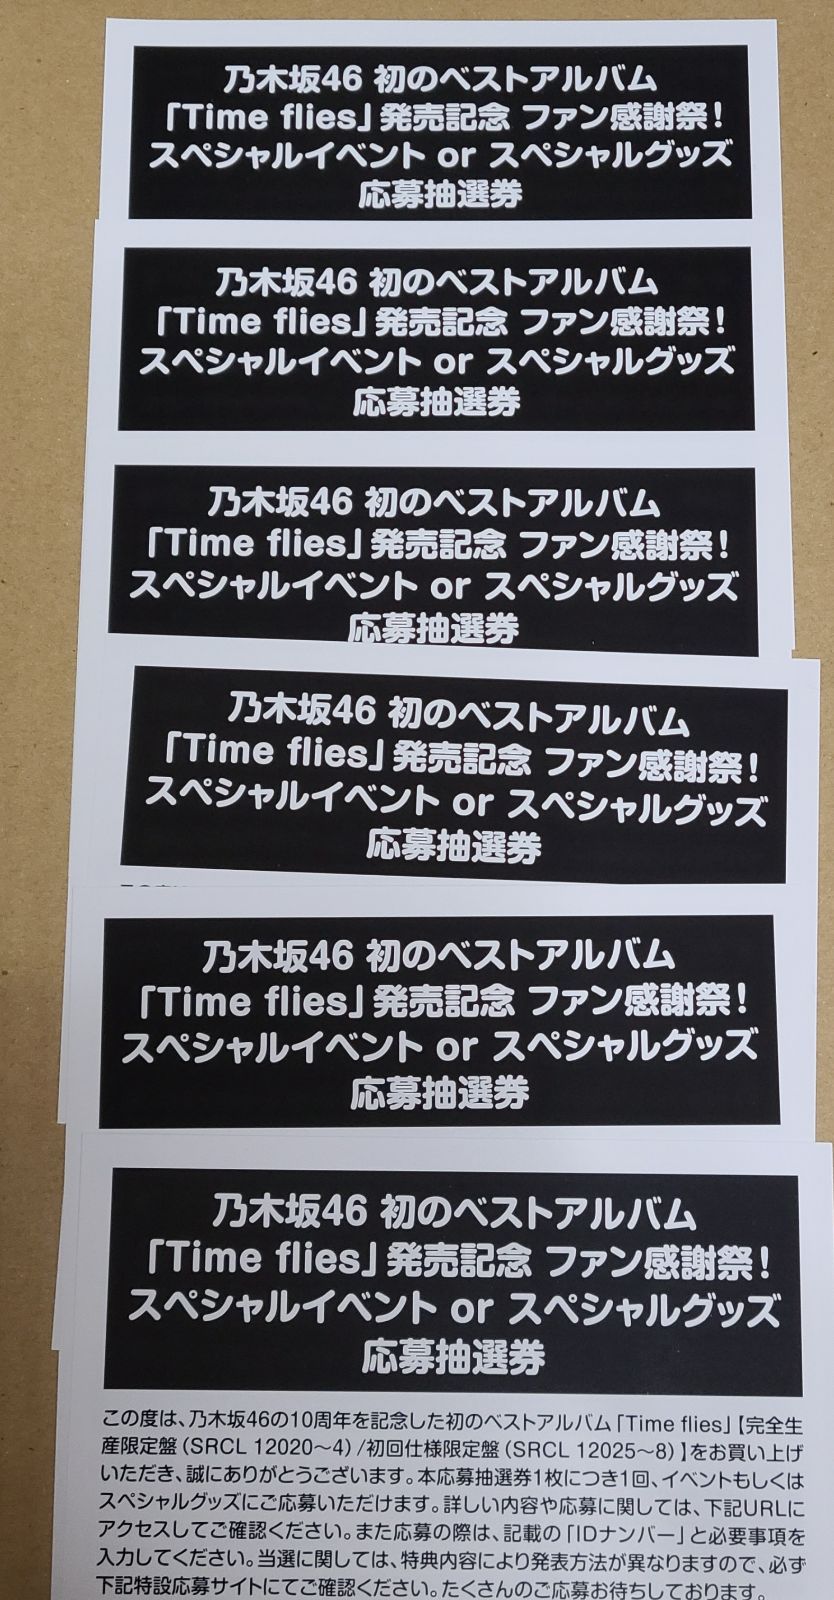 乃木坂46 ベストアルバム「Time flies」 スペシャルイベント応募券 ...